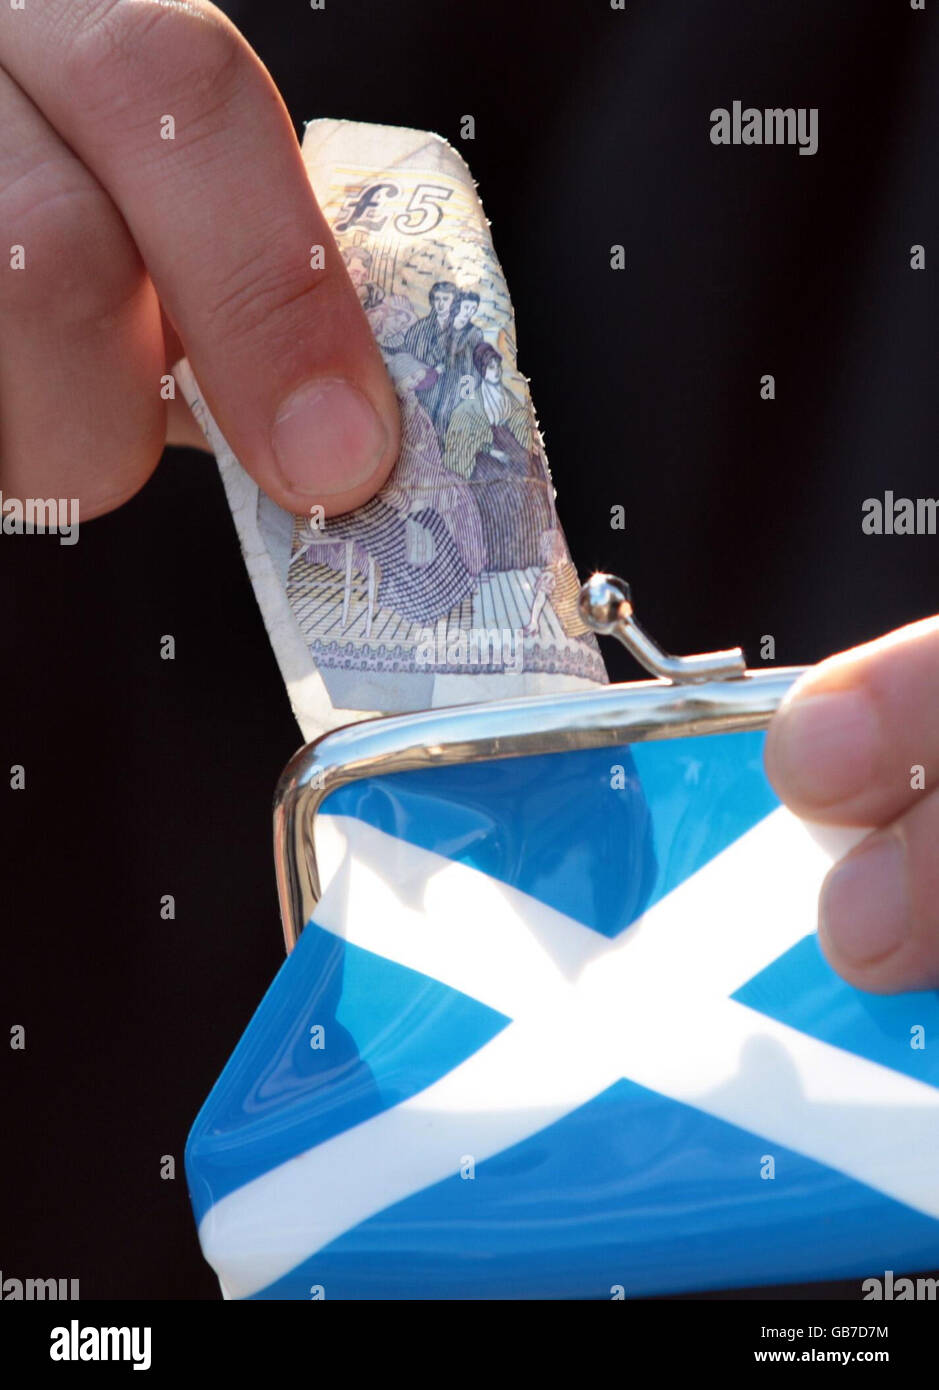 Eine 5-Pfund-Note wird in eine Geldbörse mit einem Saltyre (der Flagge Schottlands) auf der Seite gelegt. Prognostiker deuten darauf hin, dass sich die Wirtschaft bereits in einer Rezession befindet. Stockfoto